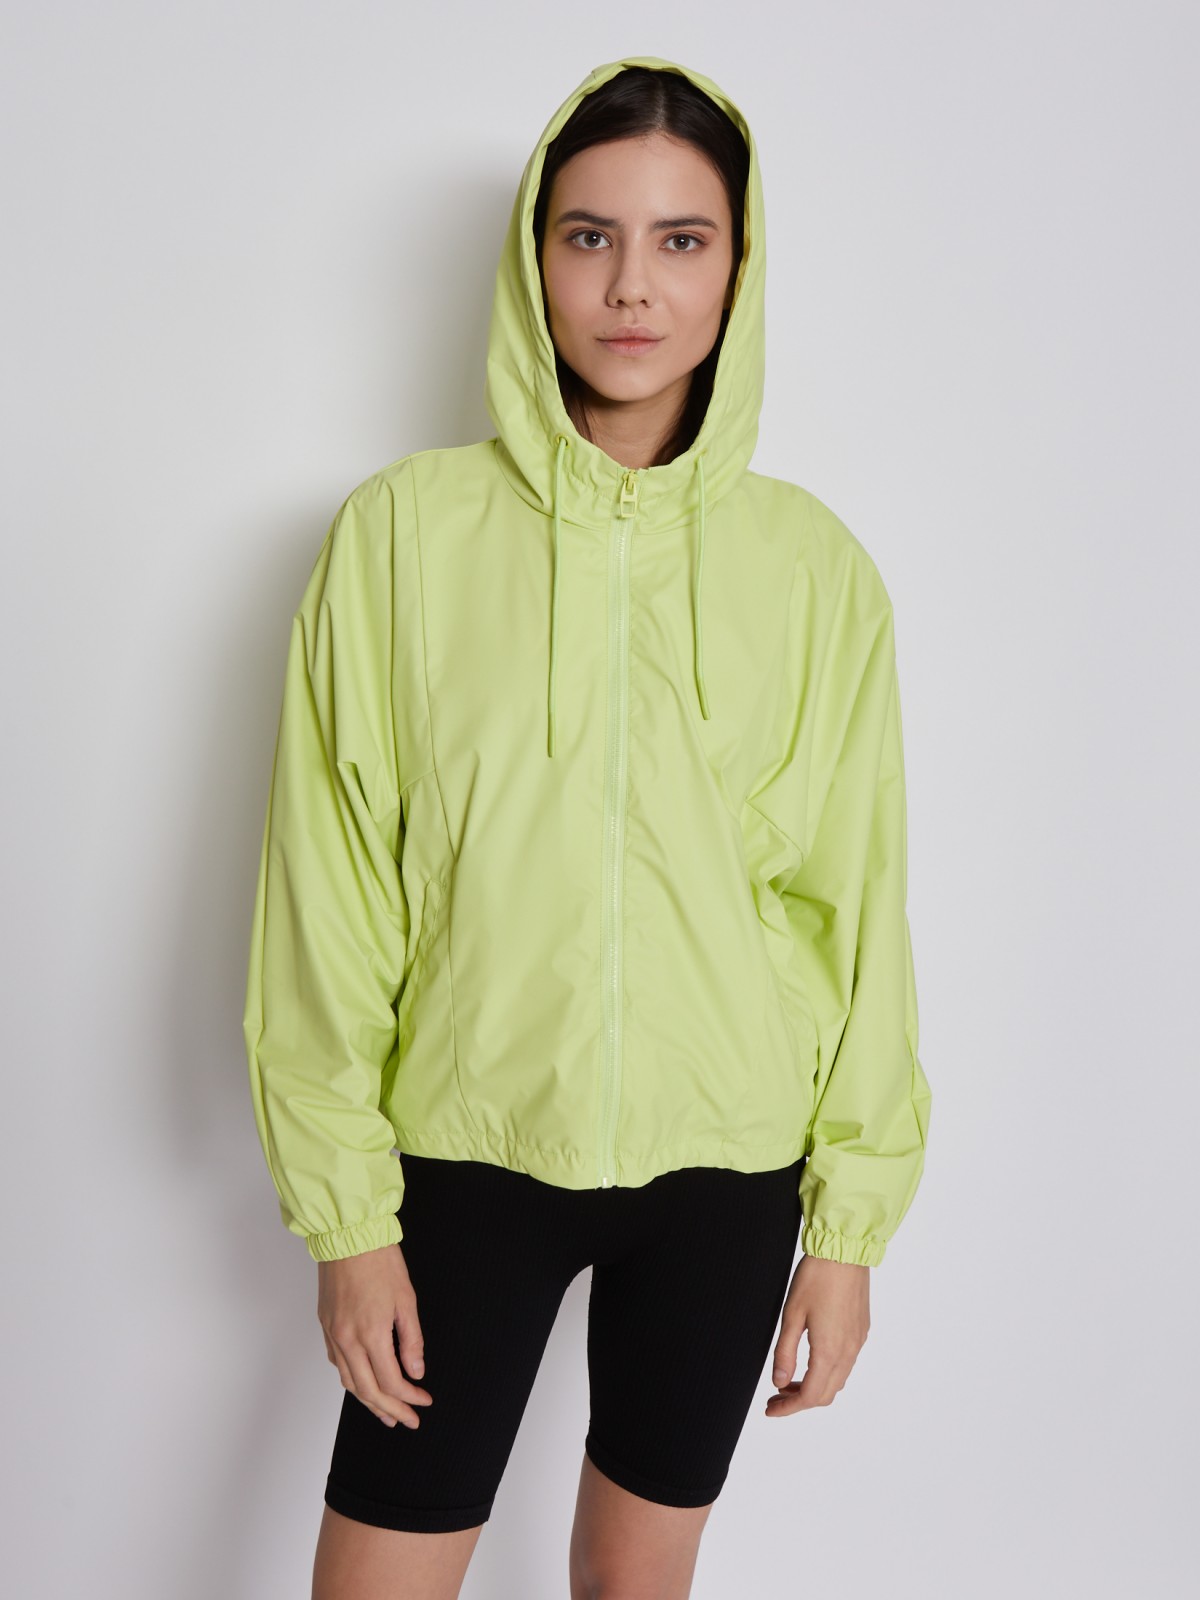 Куртка-ветровка с капюшоном zolla 02321562J034, цвет светло-зеленый, размер XS - фото 4